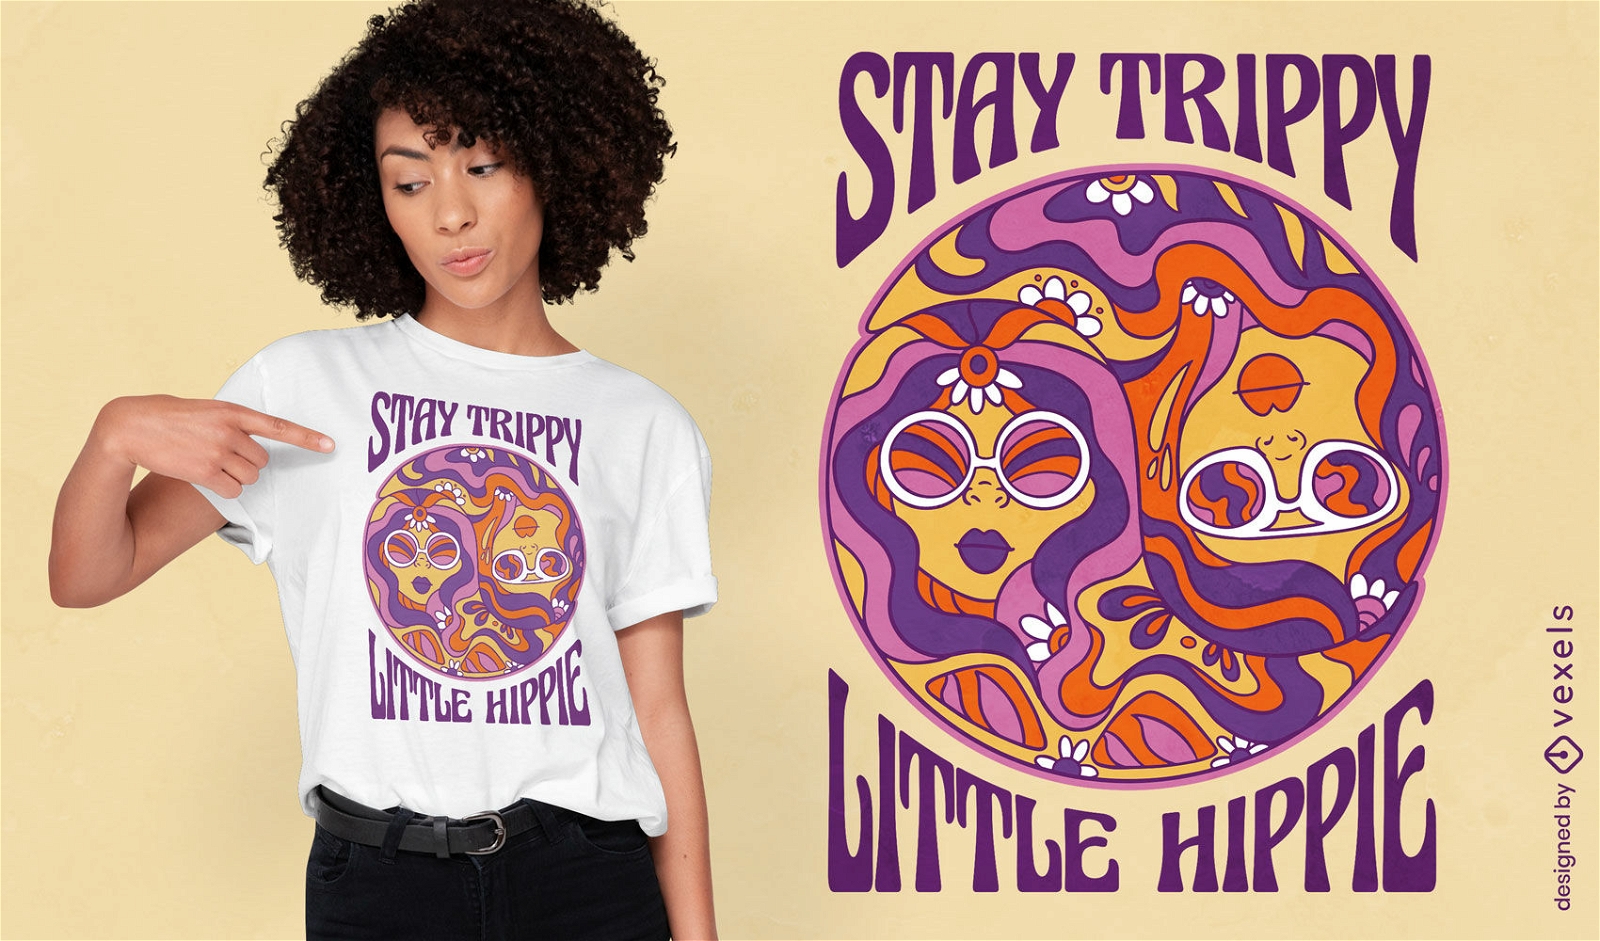 Dise?o de camiseta de chicas hippies felices de los a?os 60.